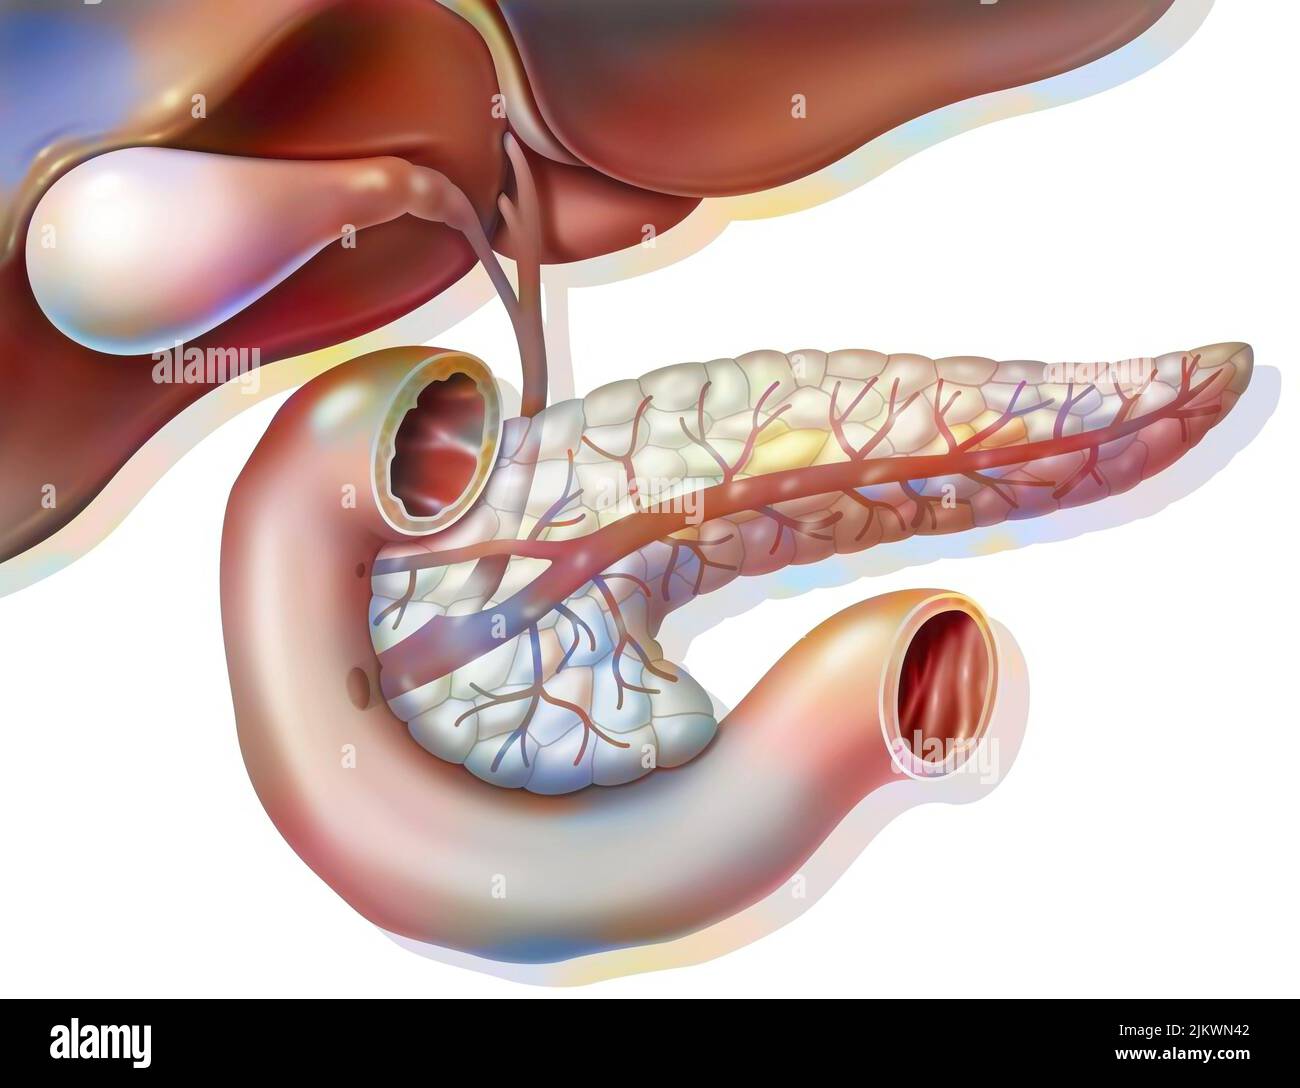 Anatomie der Bauchspeicheldrüse in der anterioren Ansicht mit Gallenblase und gemeinsamem Gallengang. Stockfoto